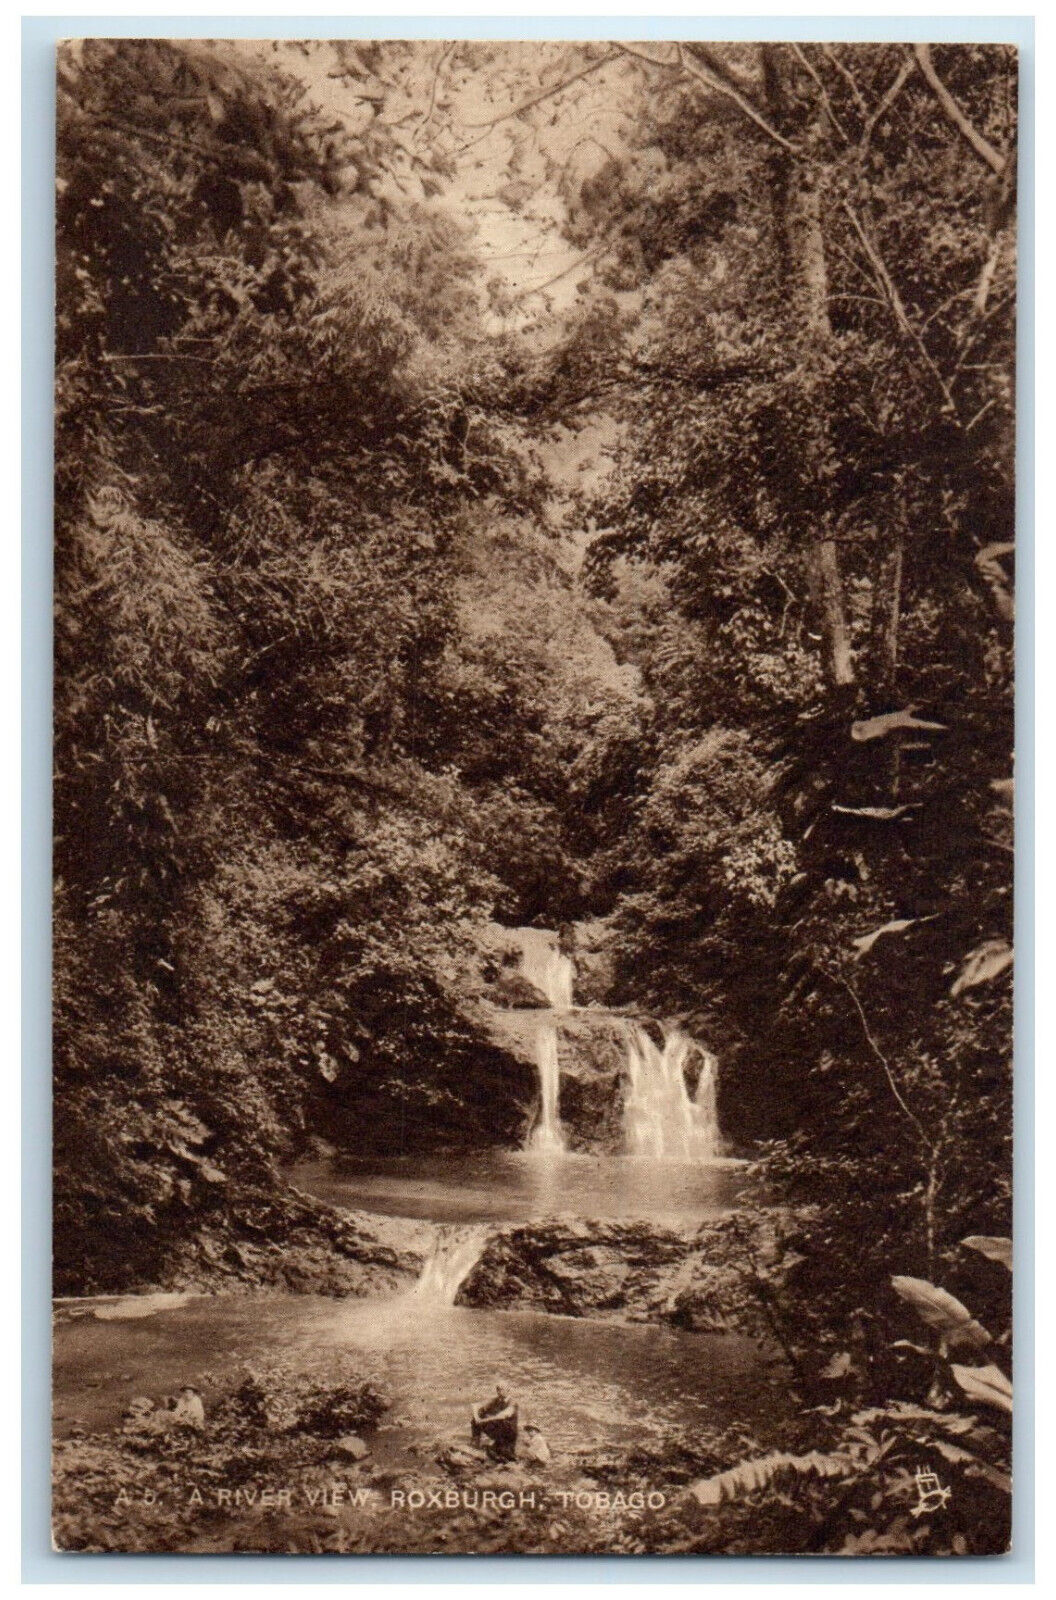 c1910 A River View Roxburgh Tobago Trinidad and Tobago Antique Postcard